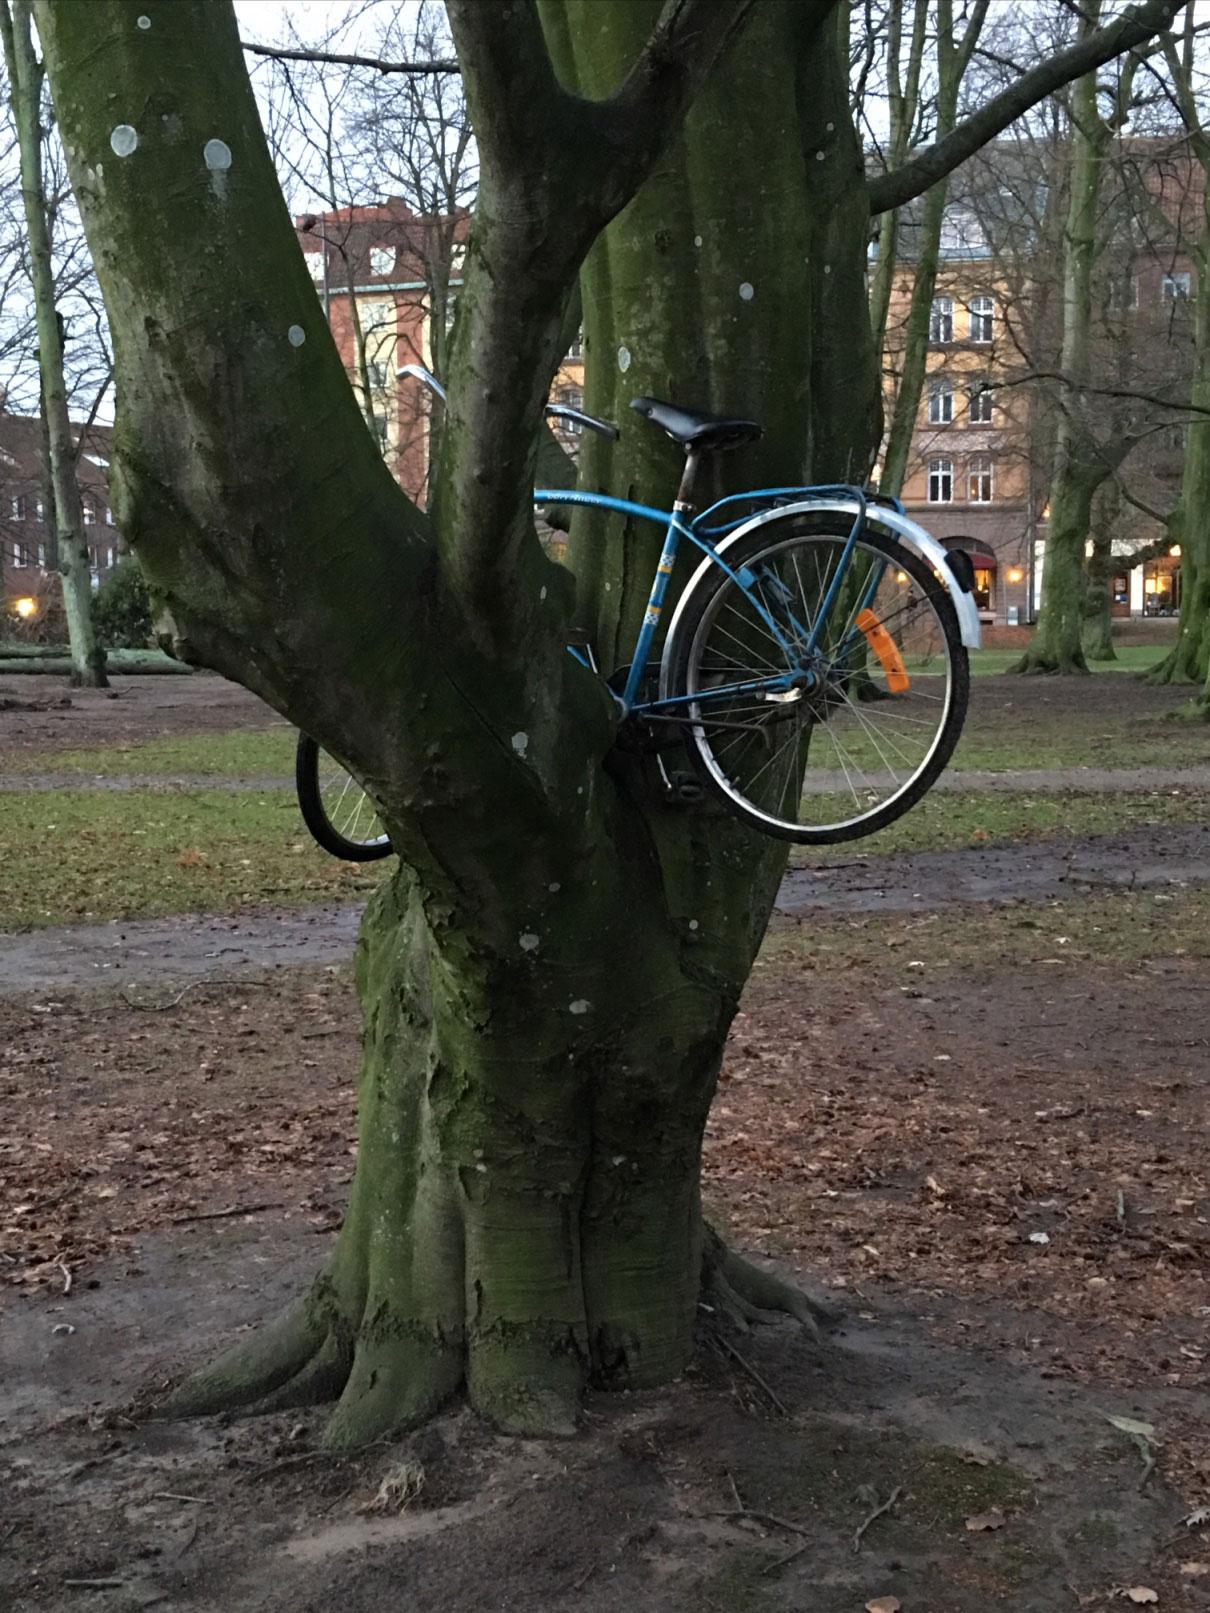 ”Cyklade genom Norre Katts park i Halmstad centrum i morse efter stormen. 11 stora träd hade fallit!! Otroligt vad naturens kraft kan göra”, skriver Carolina Karlsson.